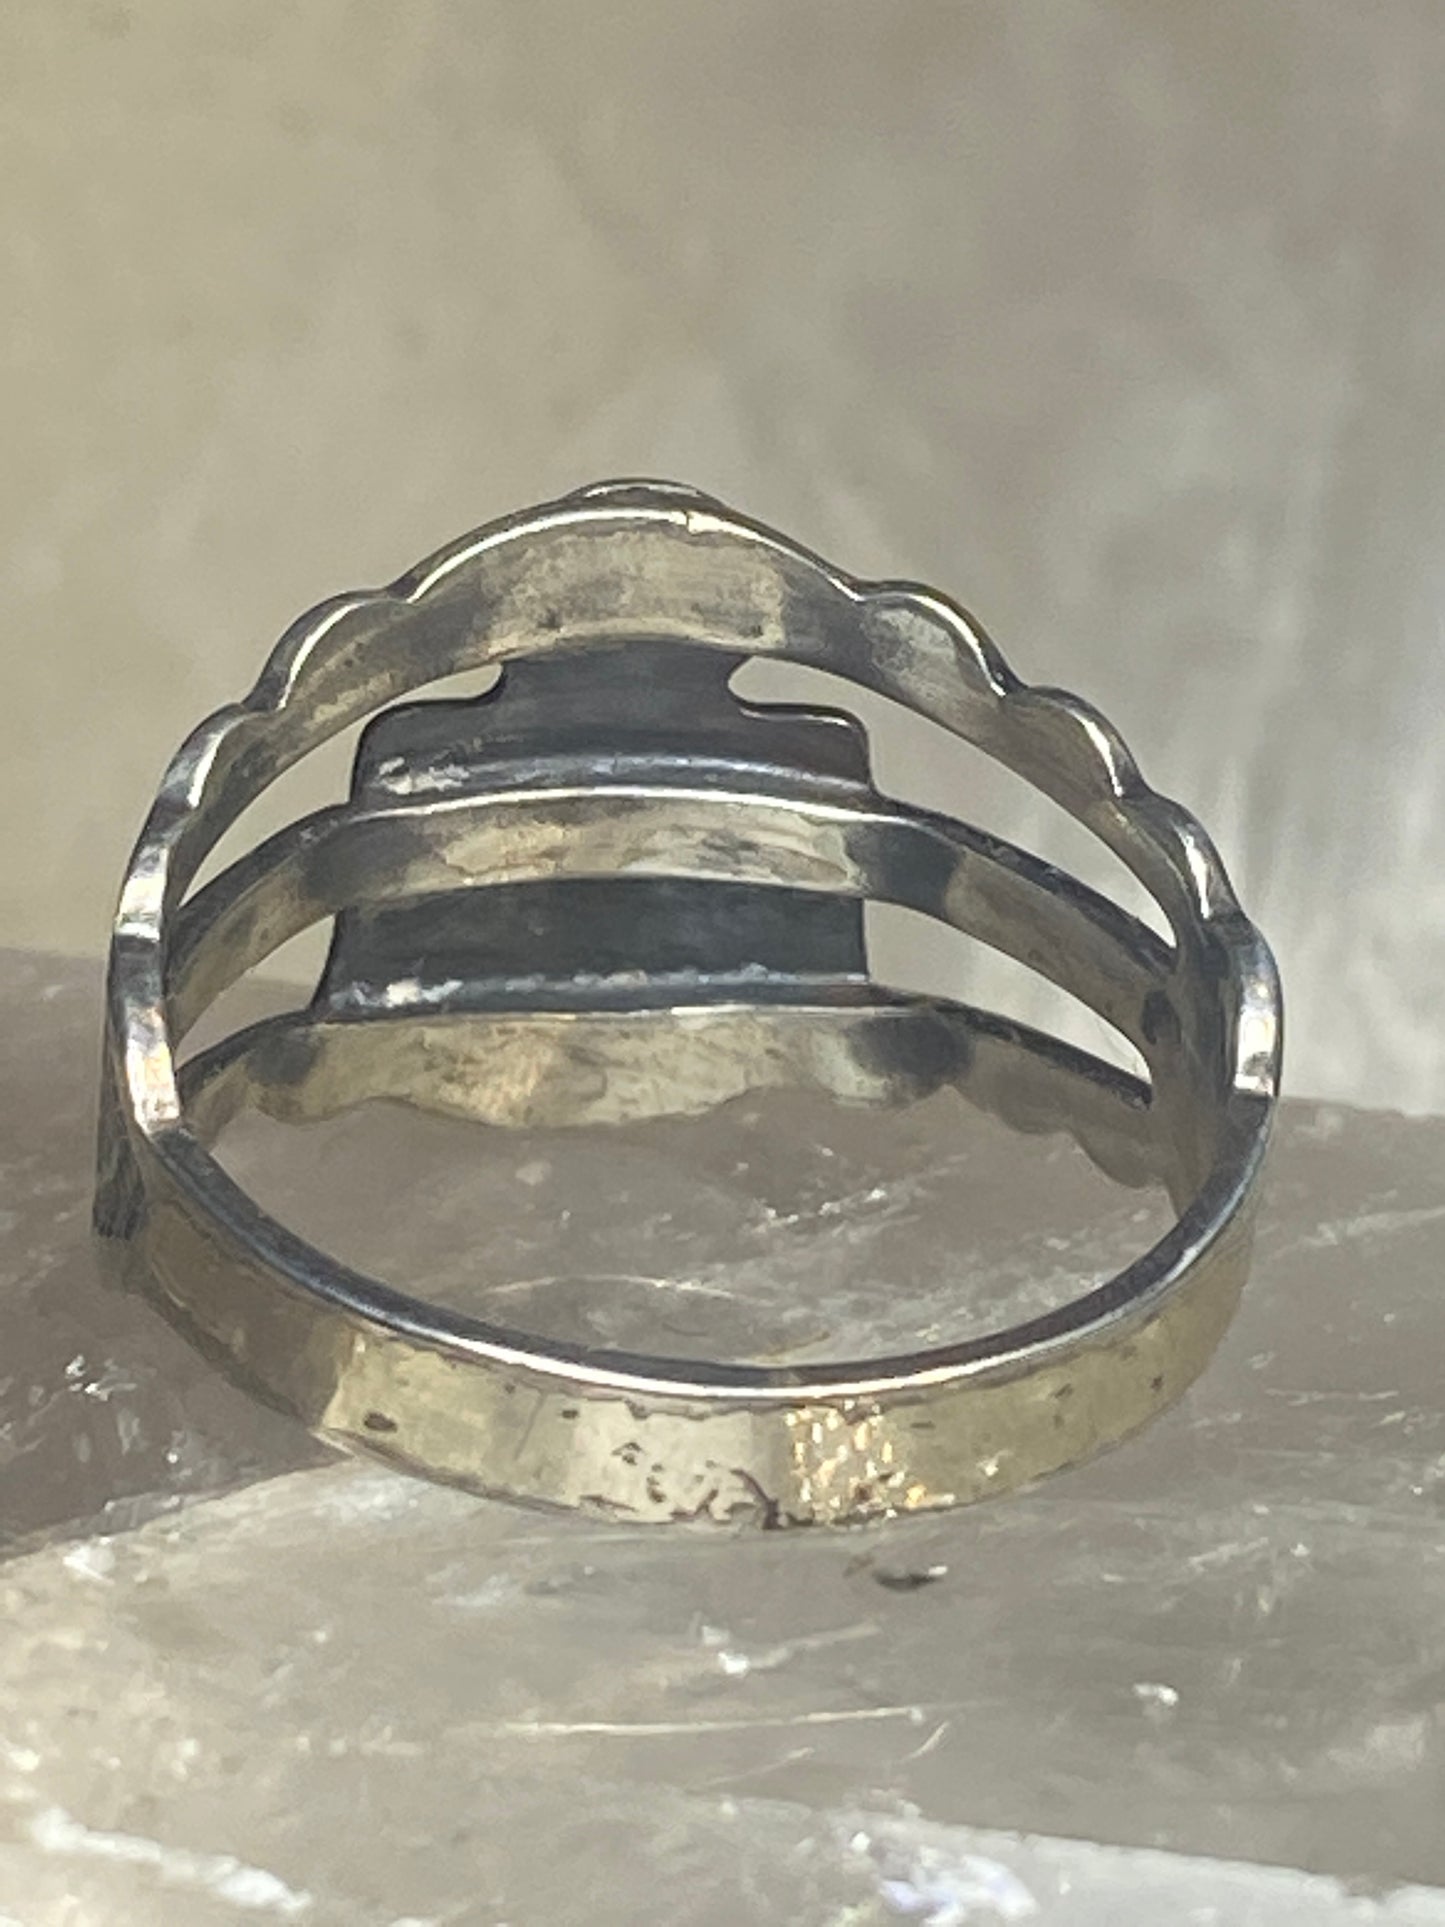 Phoenix ring size 7 southwestern sterling silver women